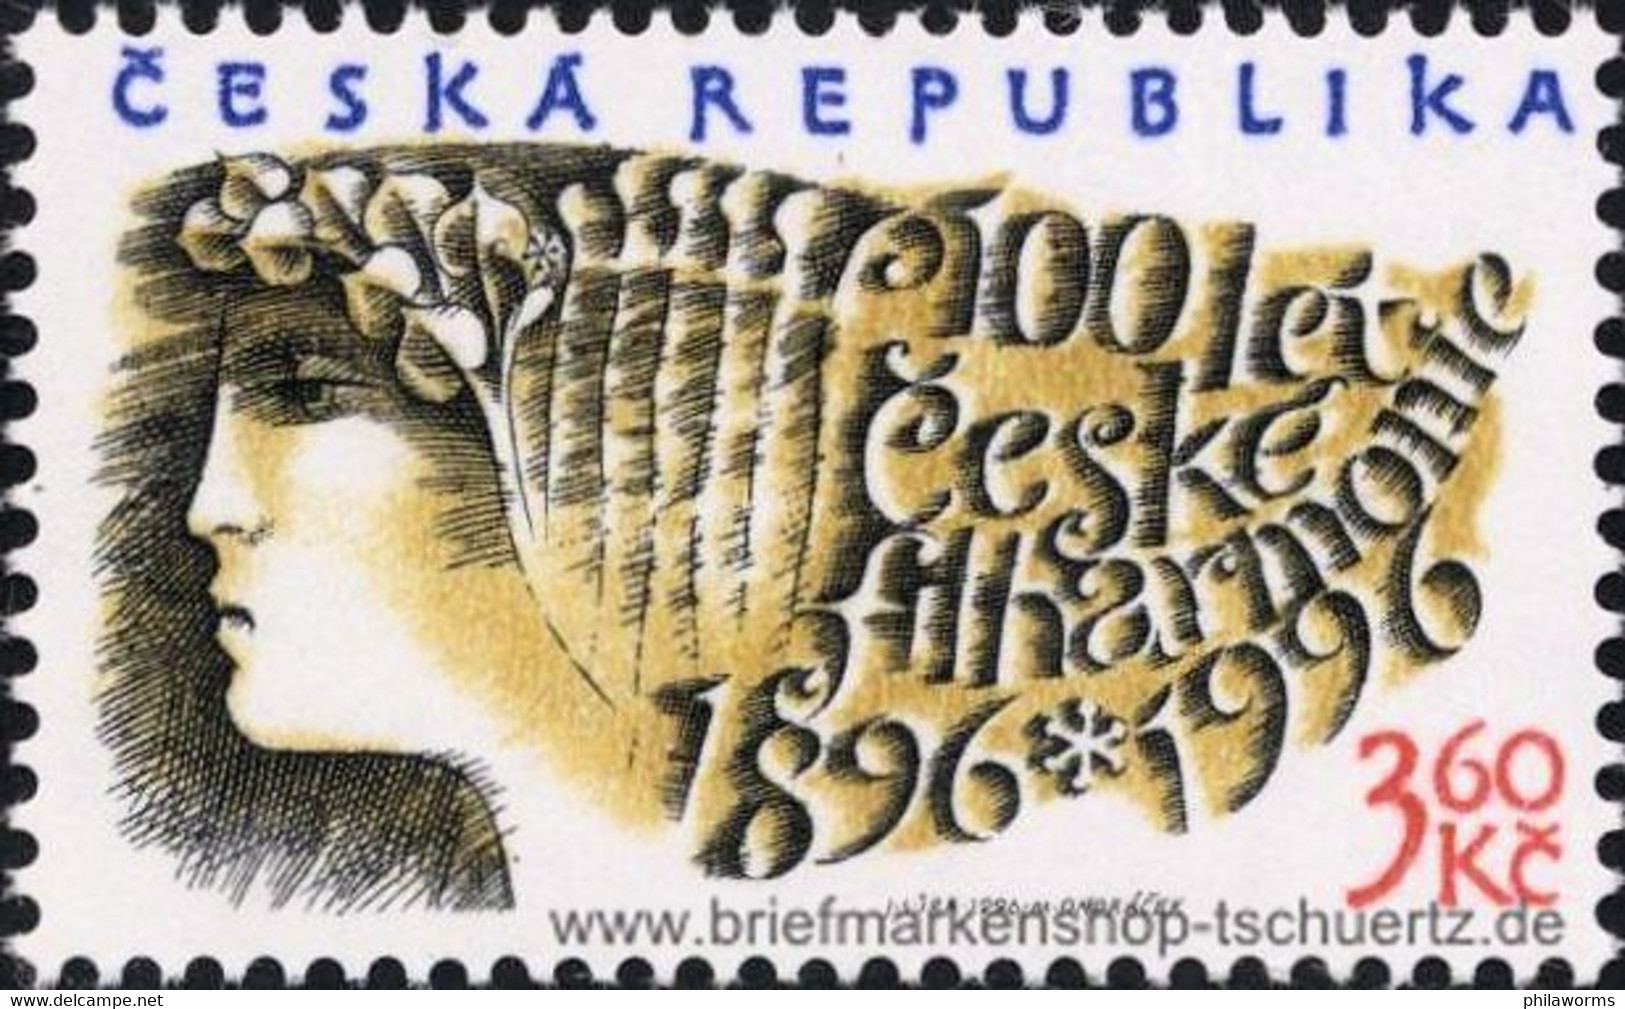 Tschechien 1996, Mi. 100 ** - Unused Stamps